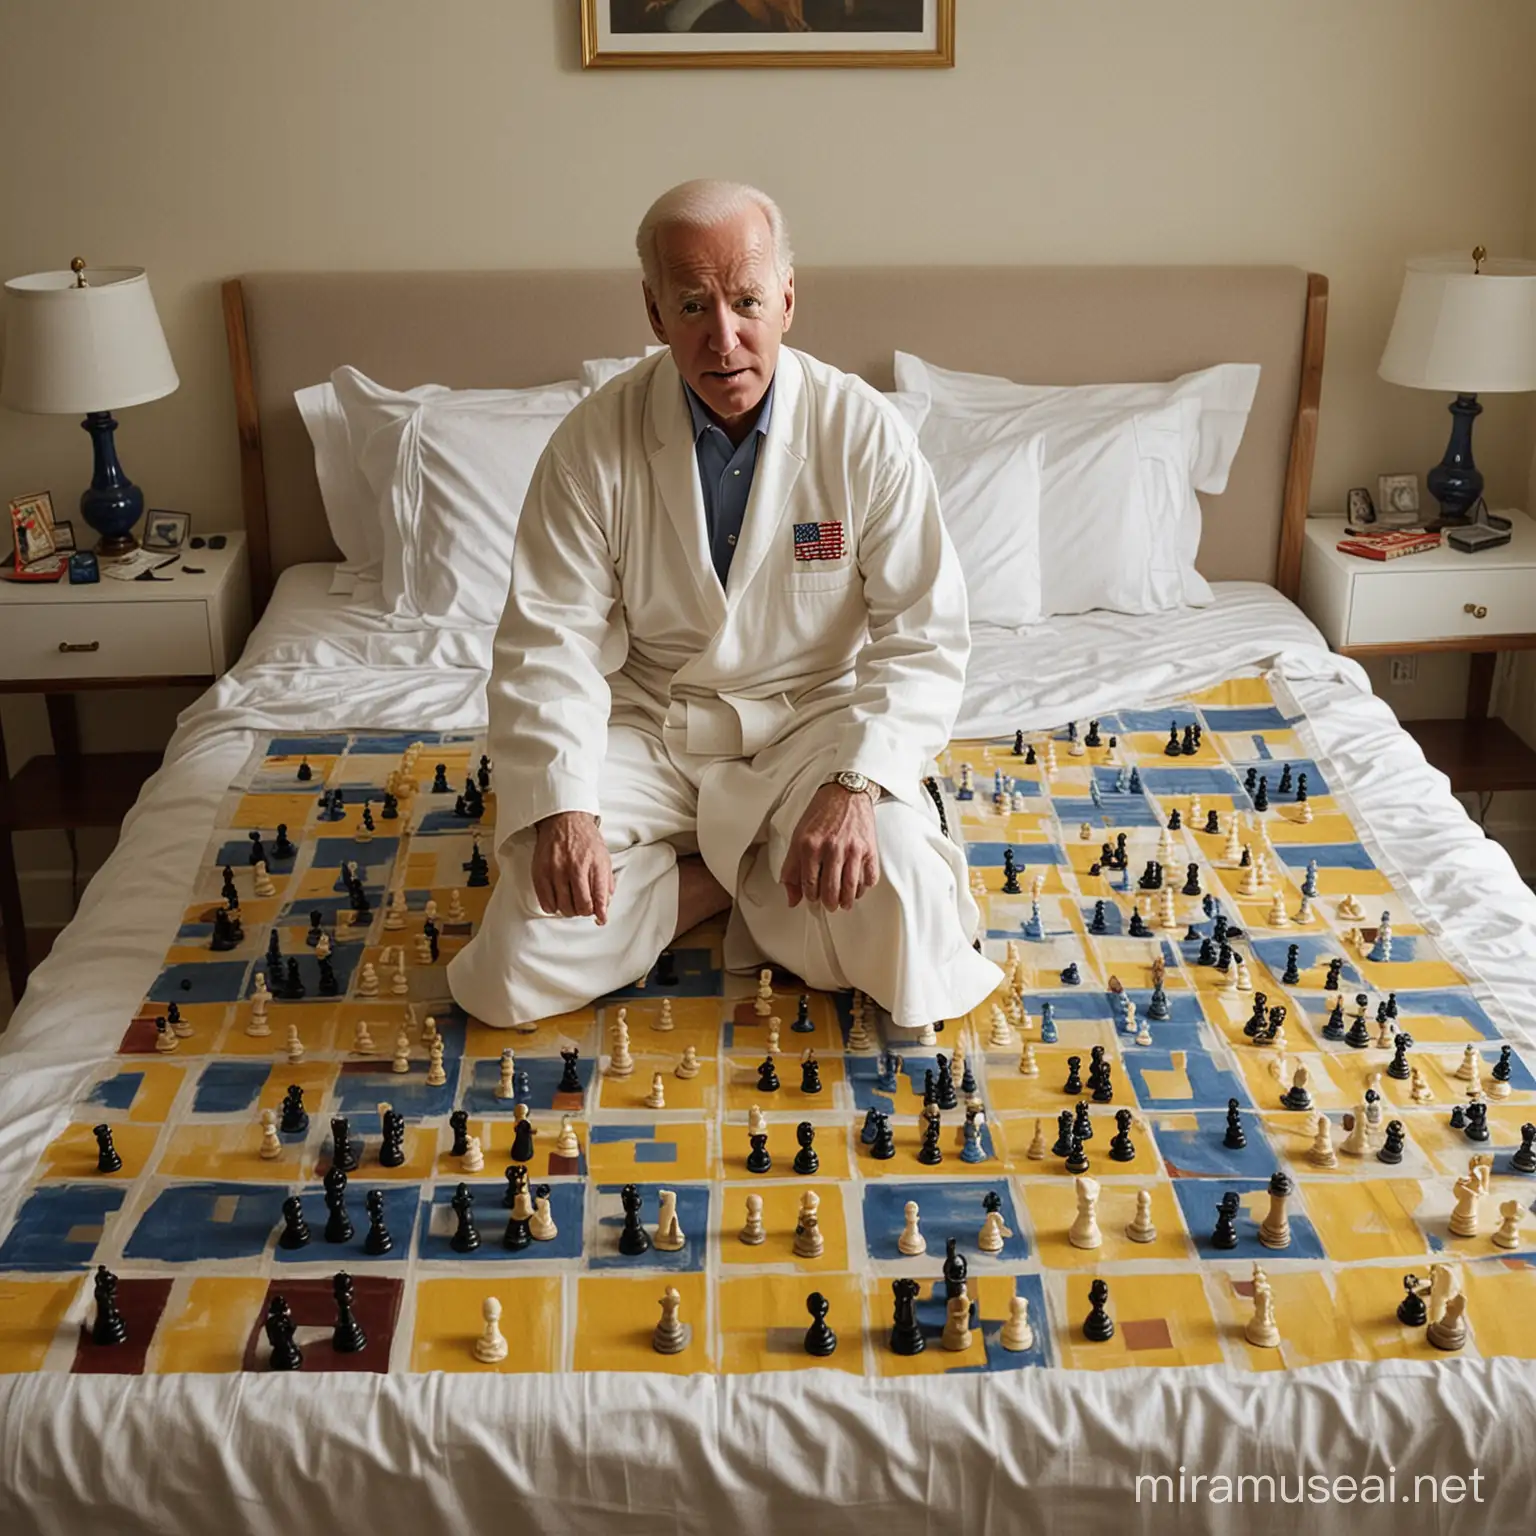 При неярком свете на широкой кровати на простыне, раскрашенной в  Американский  флаг, с калькулятором в руках Джо Байден в халате   играет в шахматы на доске  с желтыми и голубыми  клетками размером 25 на 25 клеток